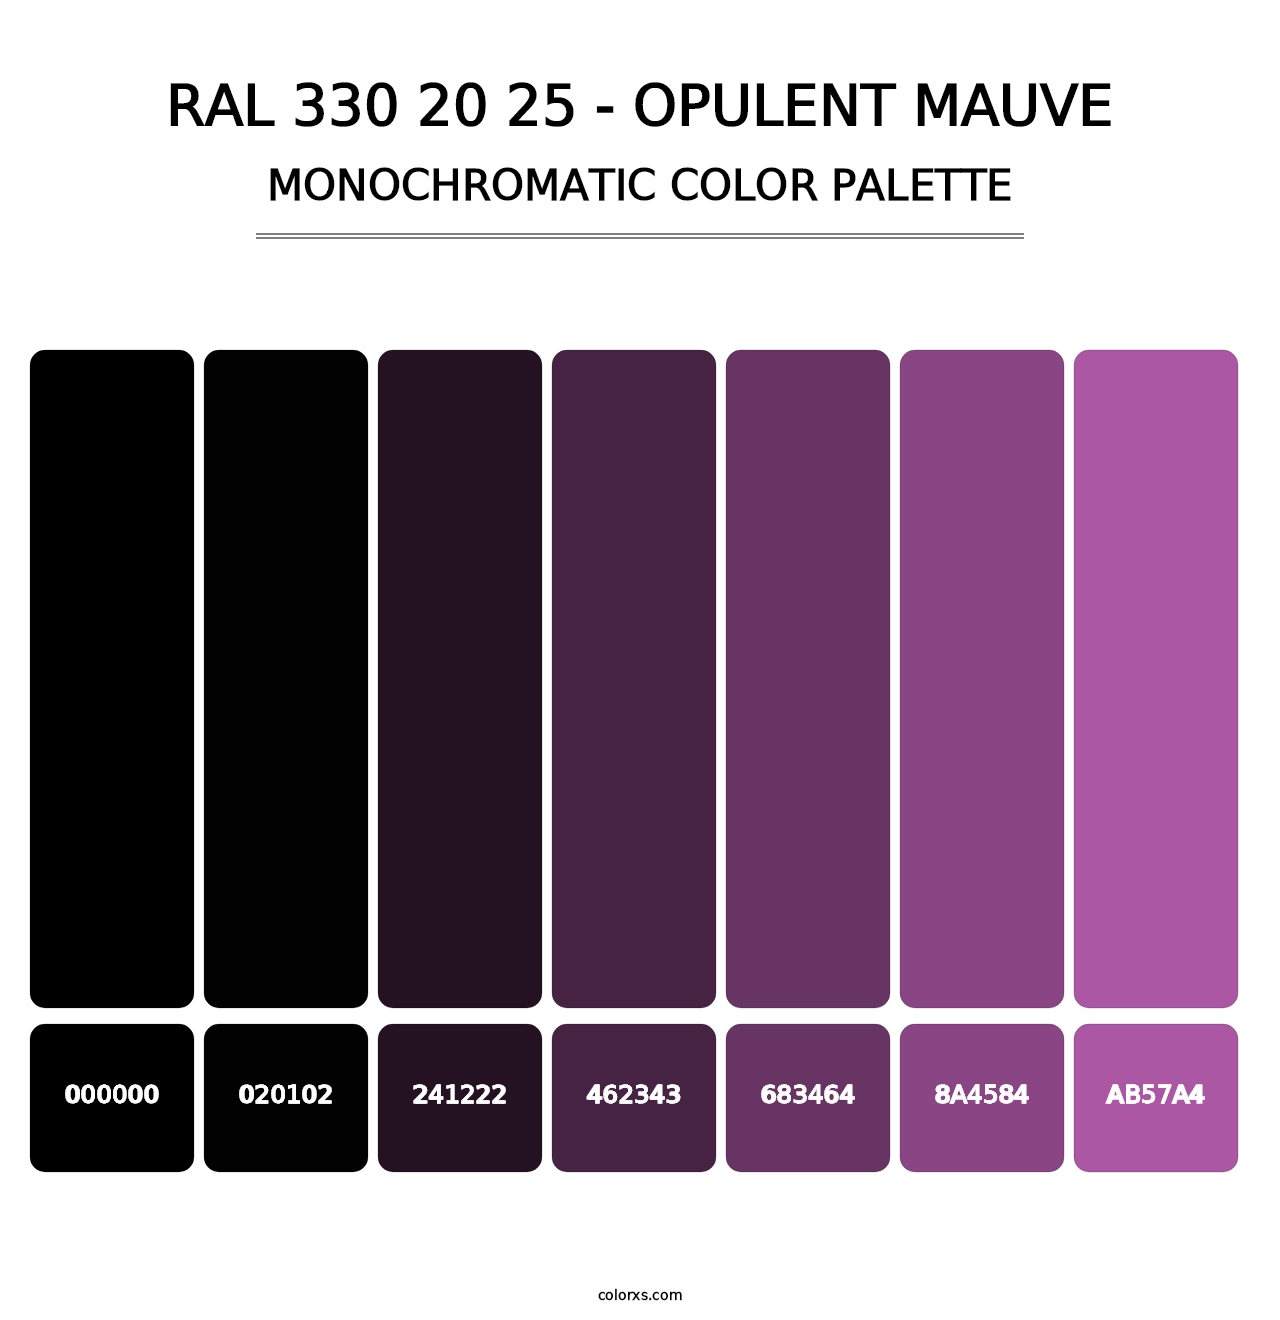 RAL 330 20 25 - Opulent Mauve - Monochromatic Color Palette